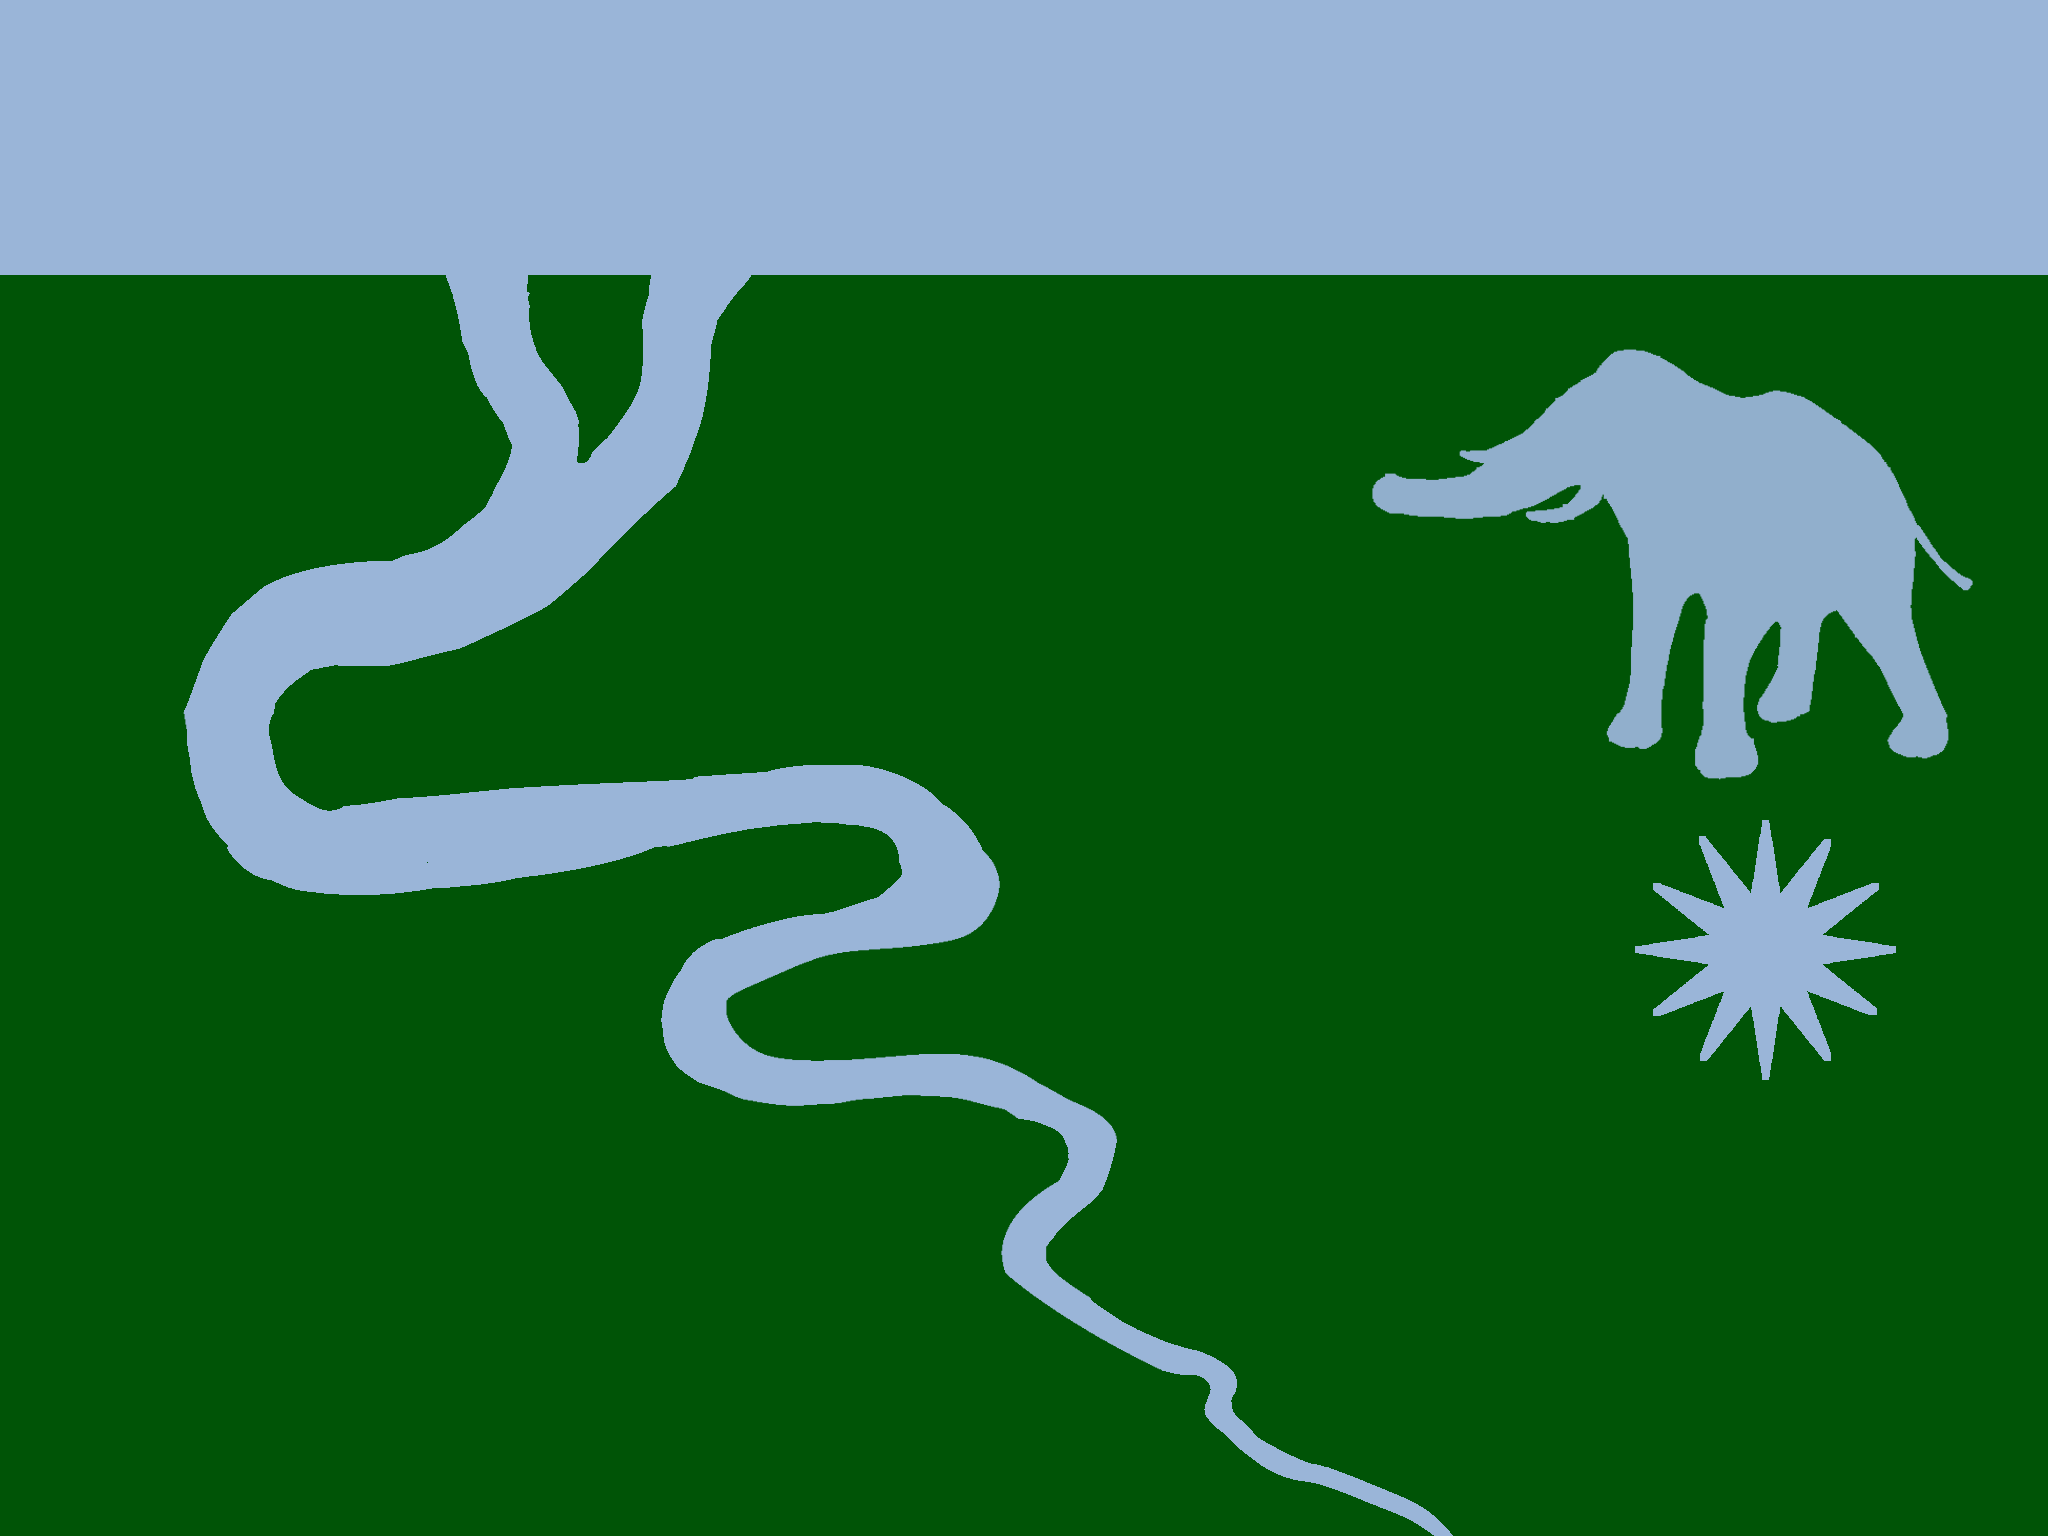 Tmavě zelená vlajka s úzkým modrým pruhem nahoře. V zelené ploše je vlevo meandrující světle modrá řeka a vpravo světle modrá silueta slona nad dvanácticípou hvězdou.